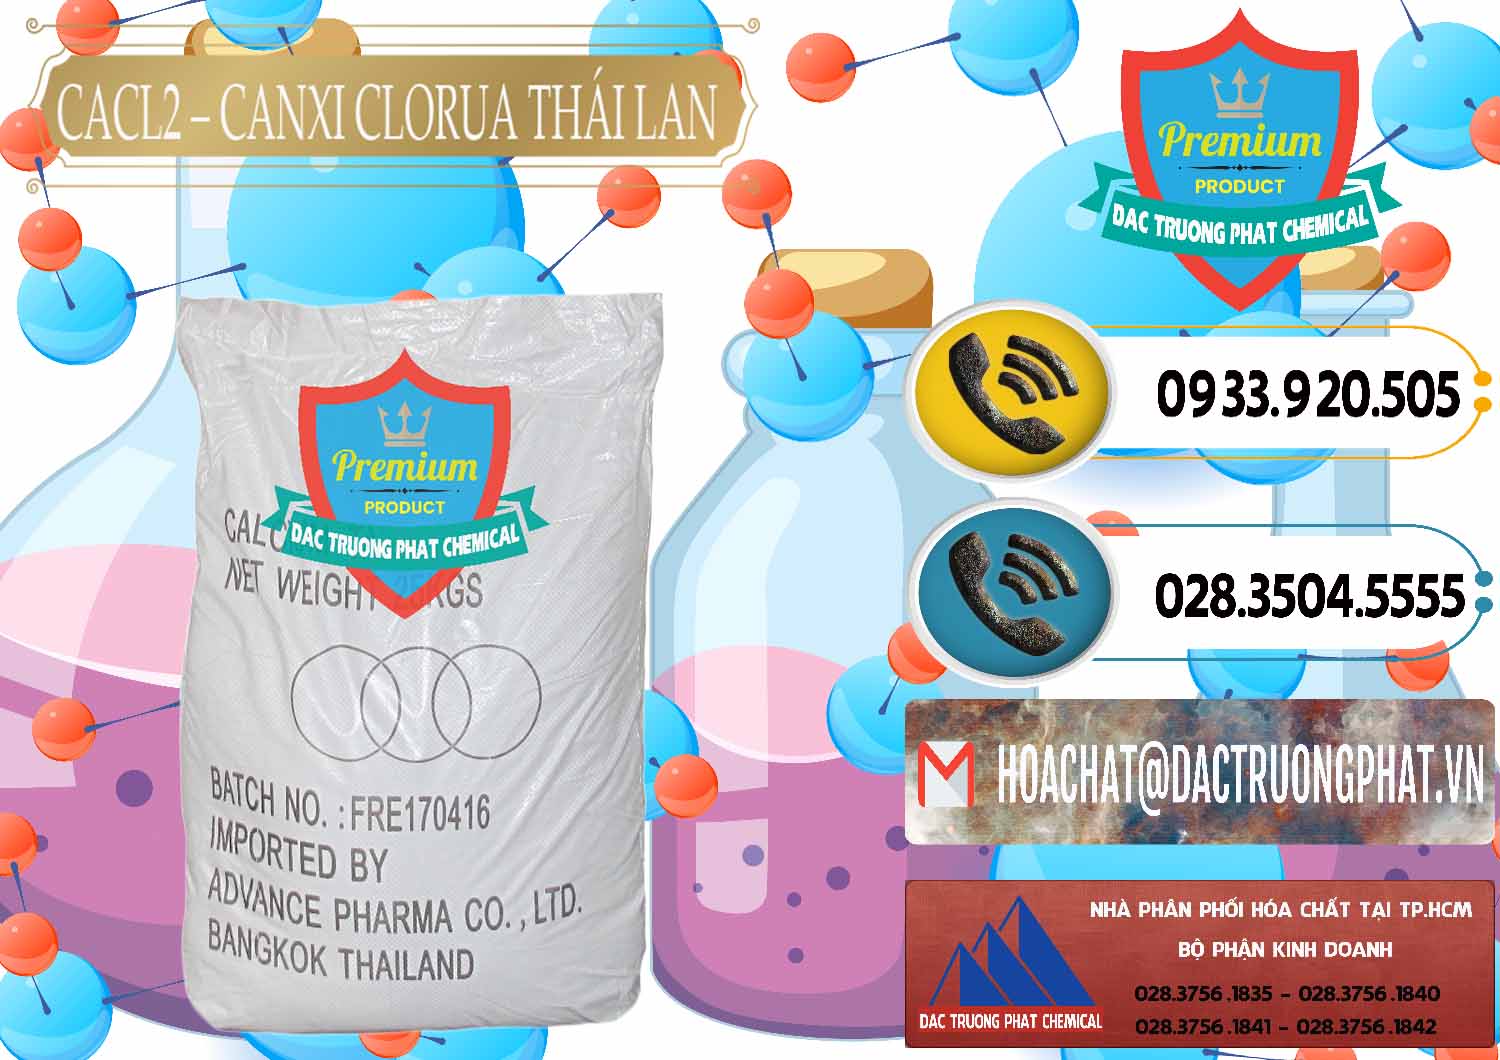 Công ty nhập khẩu _ bán CaCl2 – Canxi Clorua 96% Thái Lan - 0042 - Công ty cung cấp - nhập khẩu hóa chất tại TP.HCM - hoachatdetnhuom.vn